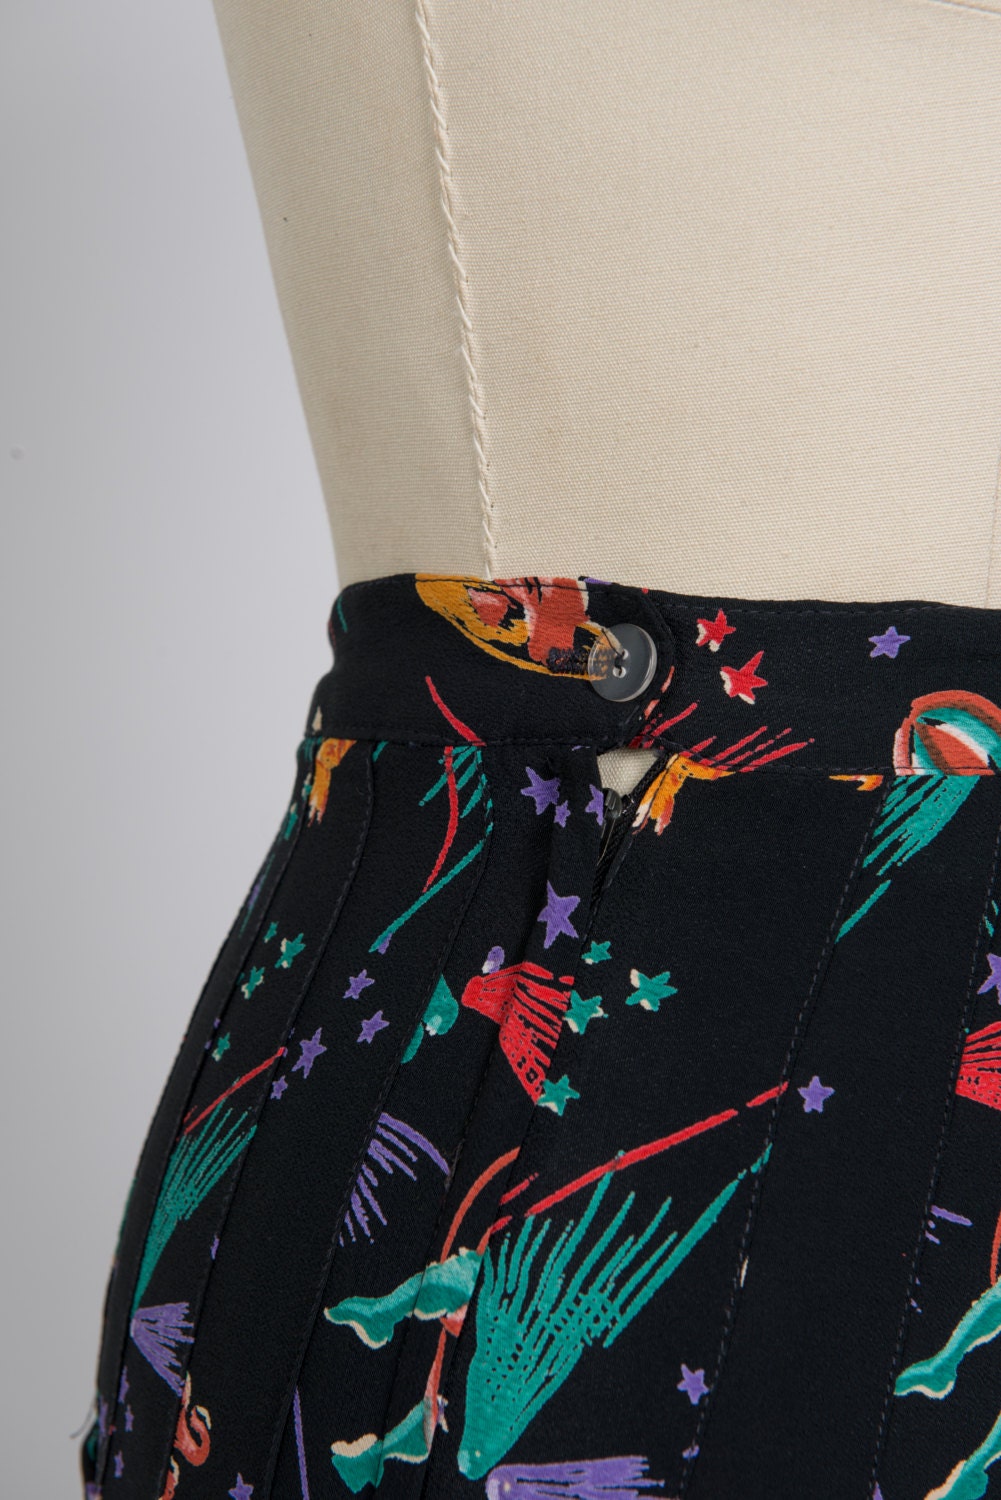 Vintage 1980s kitsch pattern skirt - 80s black pleated floaty skirt - Eighties knee-length multicolour print skirt